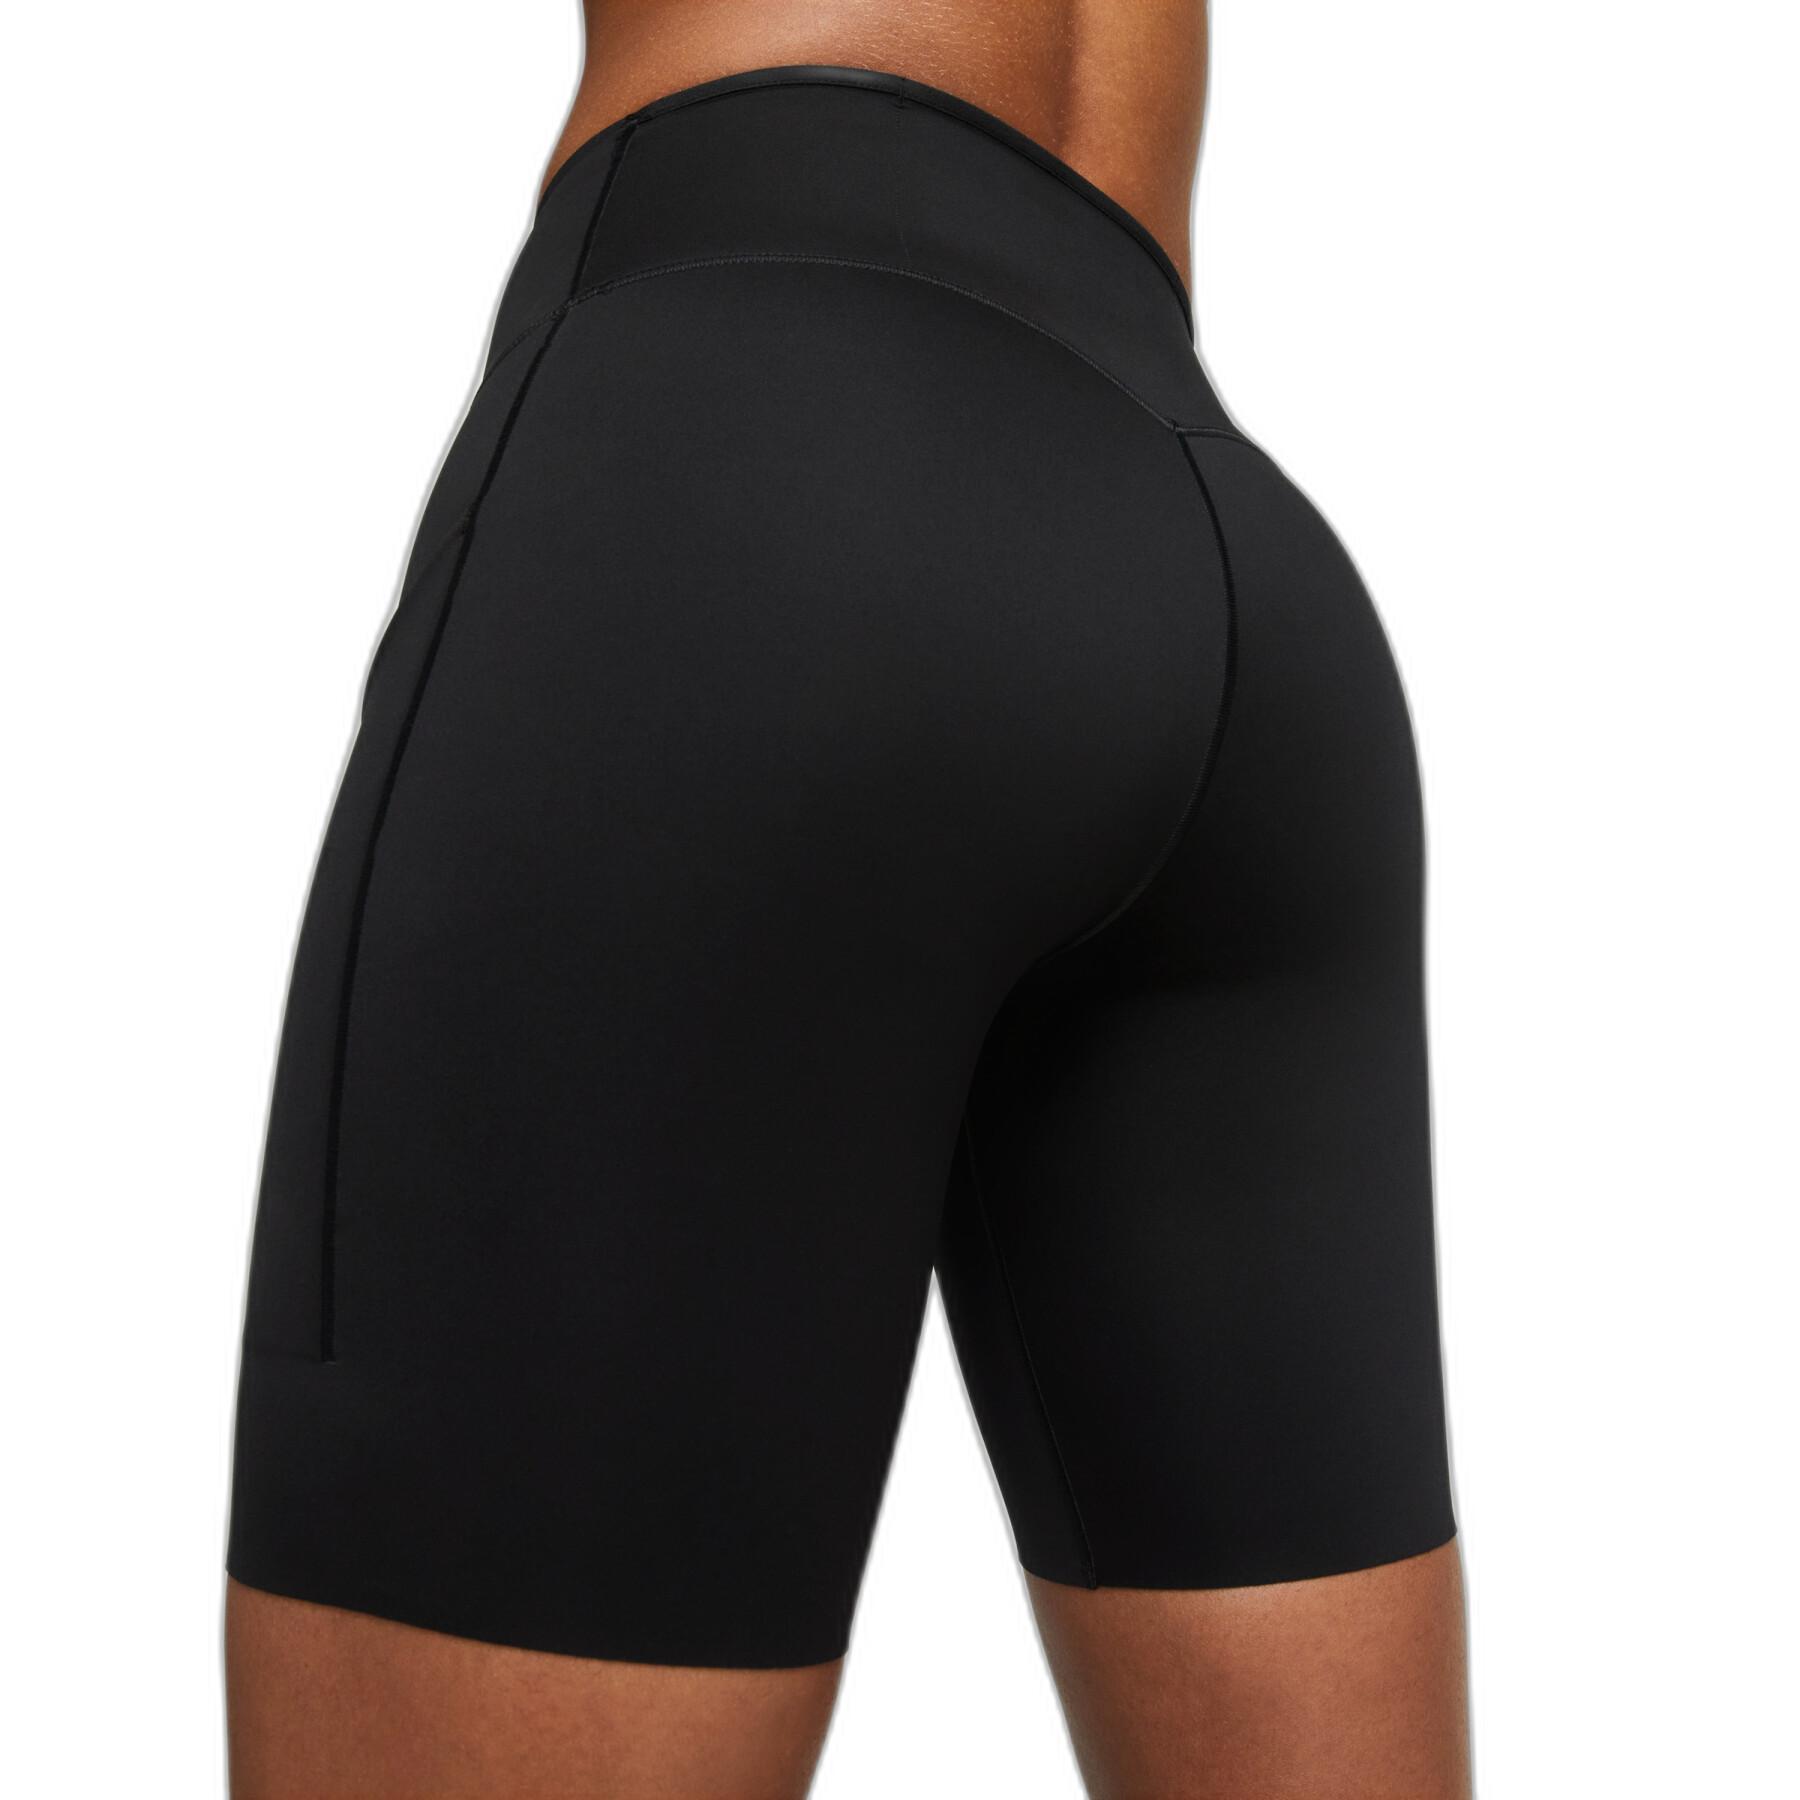 Midjehöga shorts för kvinnor Nike Dri-Fit Go